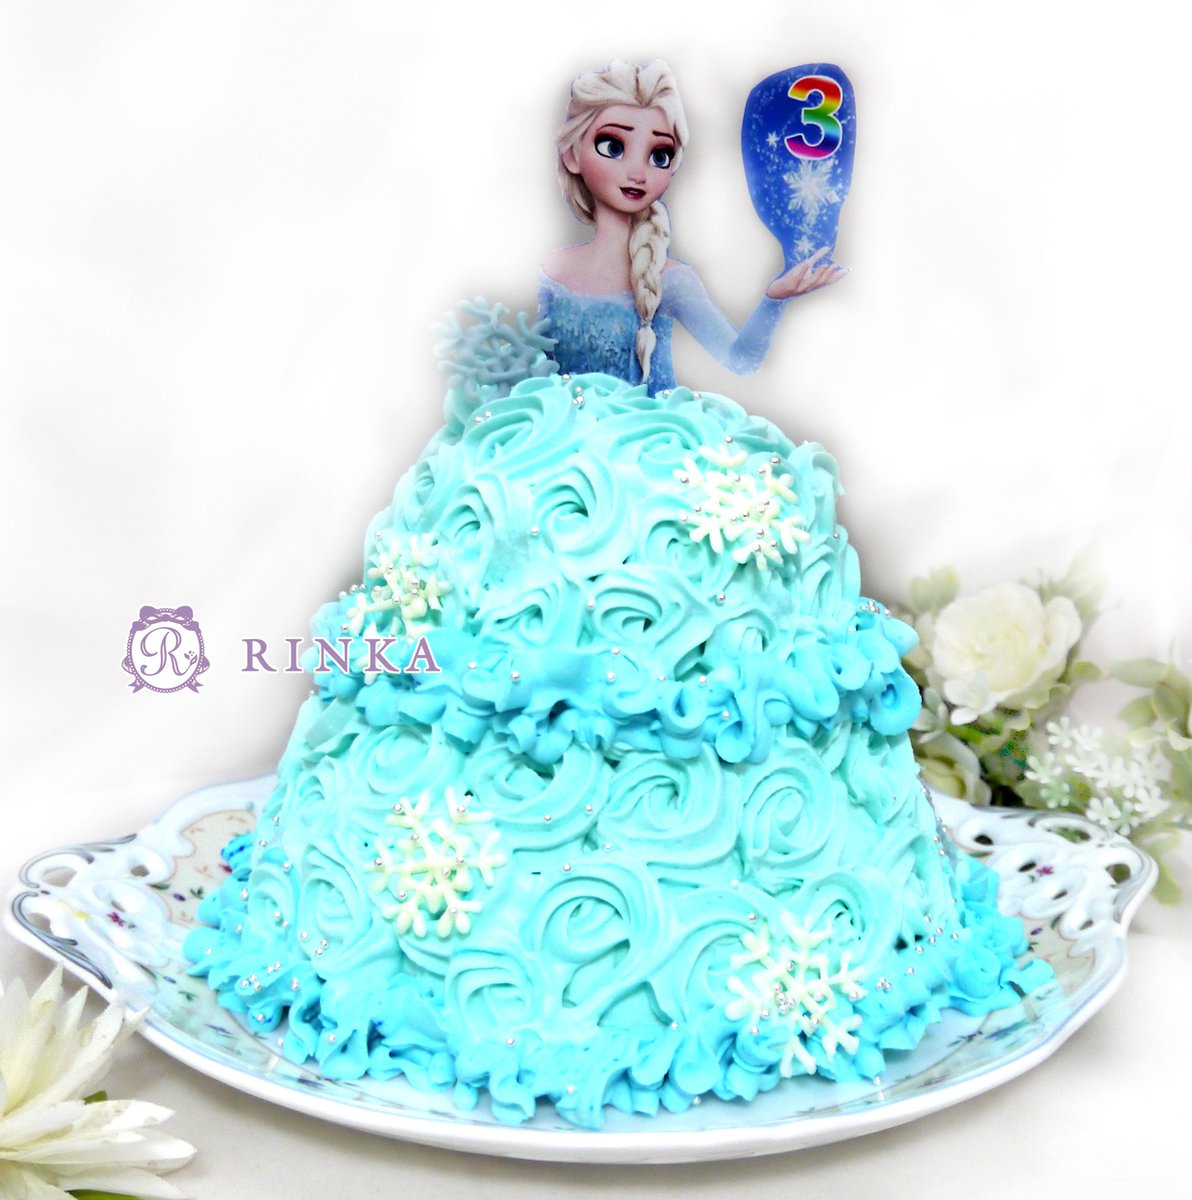 Rinka アナ雪大好きな娘の誕生日に エルサのドレスケーキ作りました アナ雪 ディズニープリンセス エルサ ドレス ケーキ ドームケーキ キャラケーキ 誕生日ケーキ